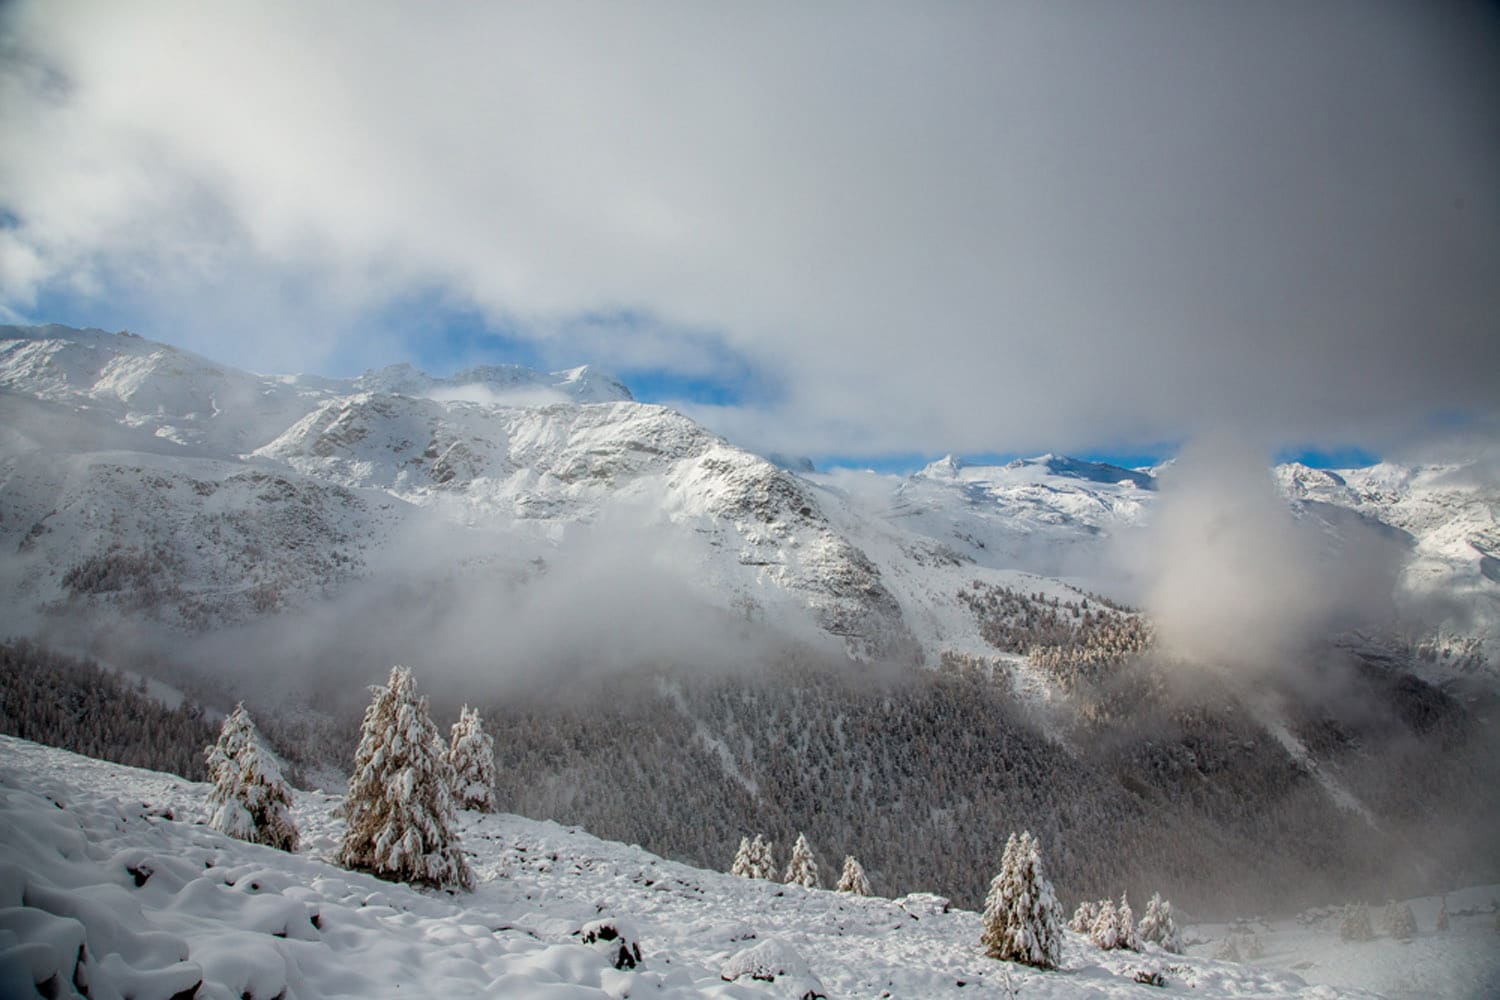 Matterhorn in the Winter